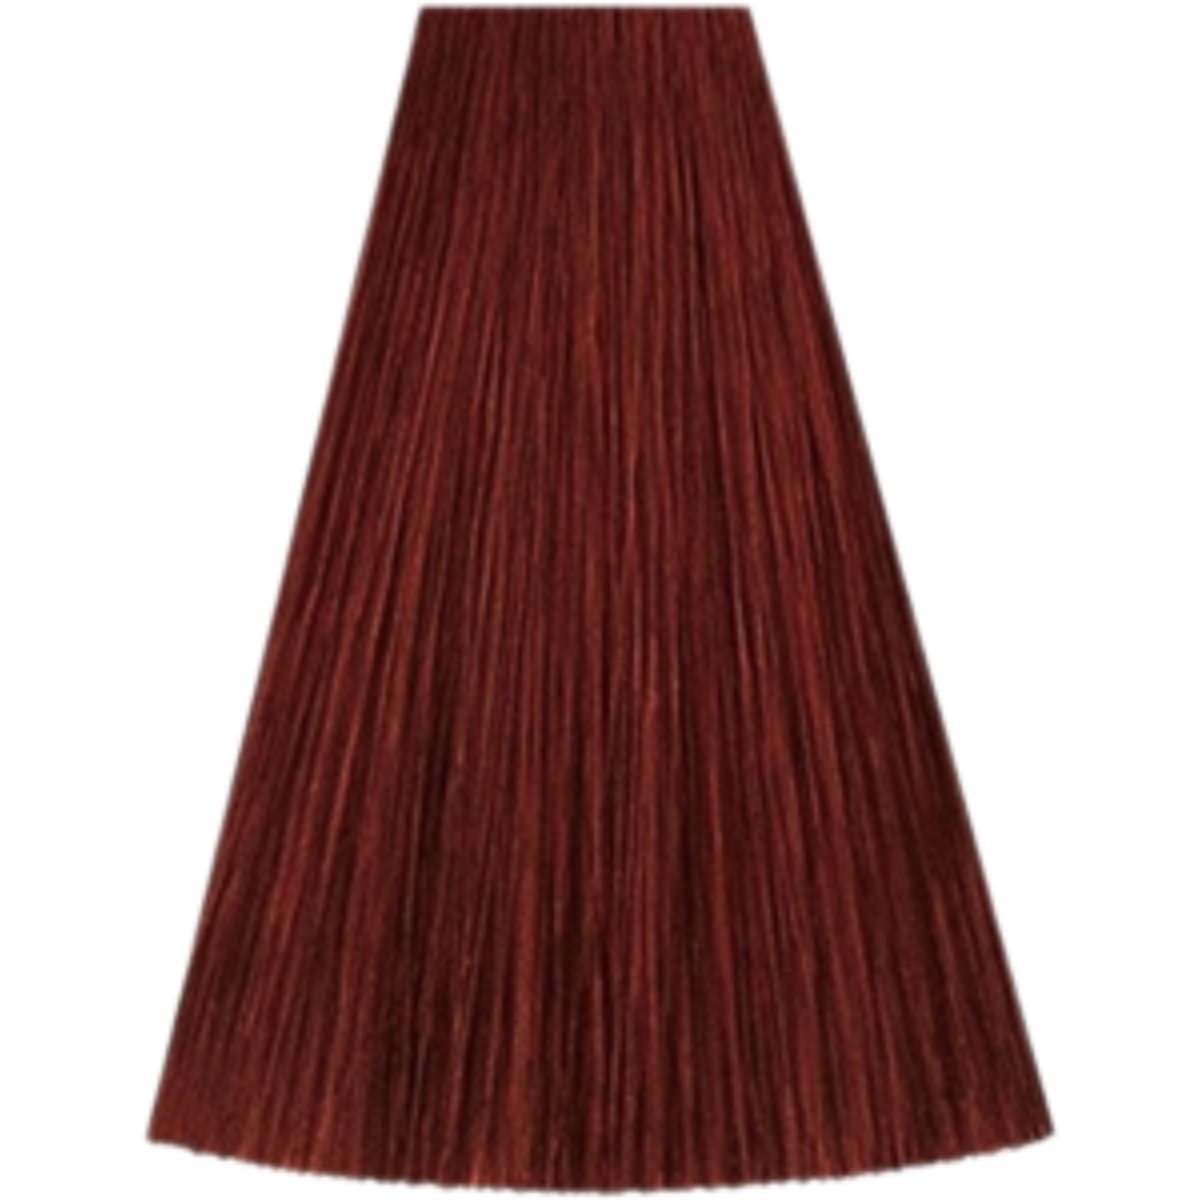 צבע שיער גוון 6/45 DARK BLONDE RED MAHOGANY קאדוס KADUS צבע לשיער 60 גרם